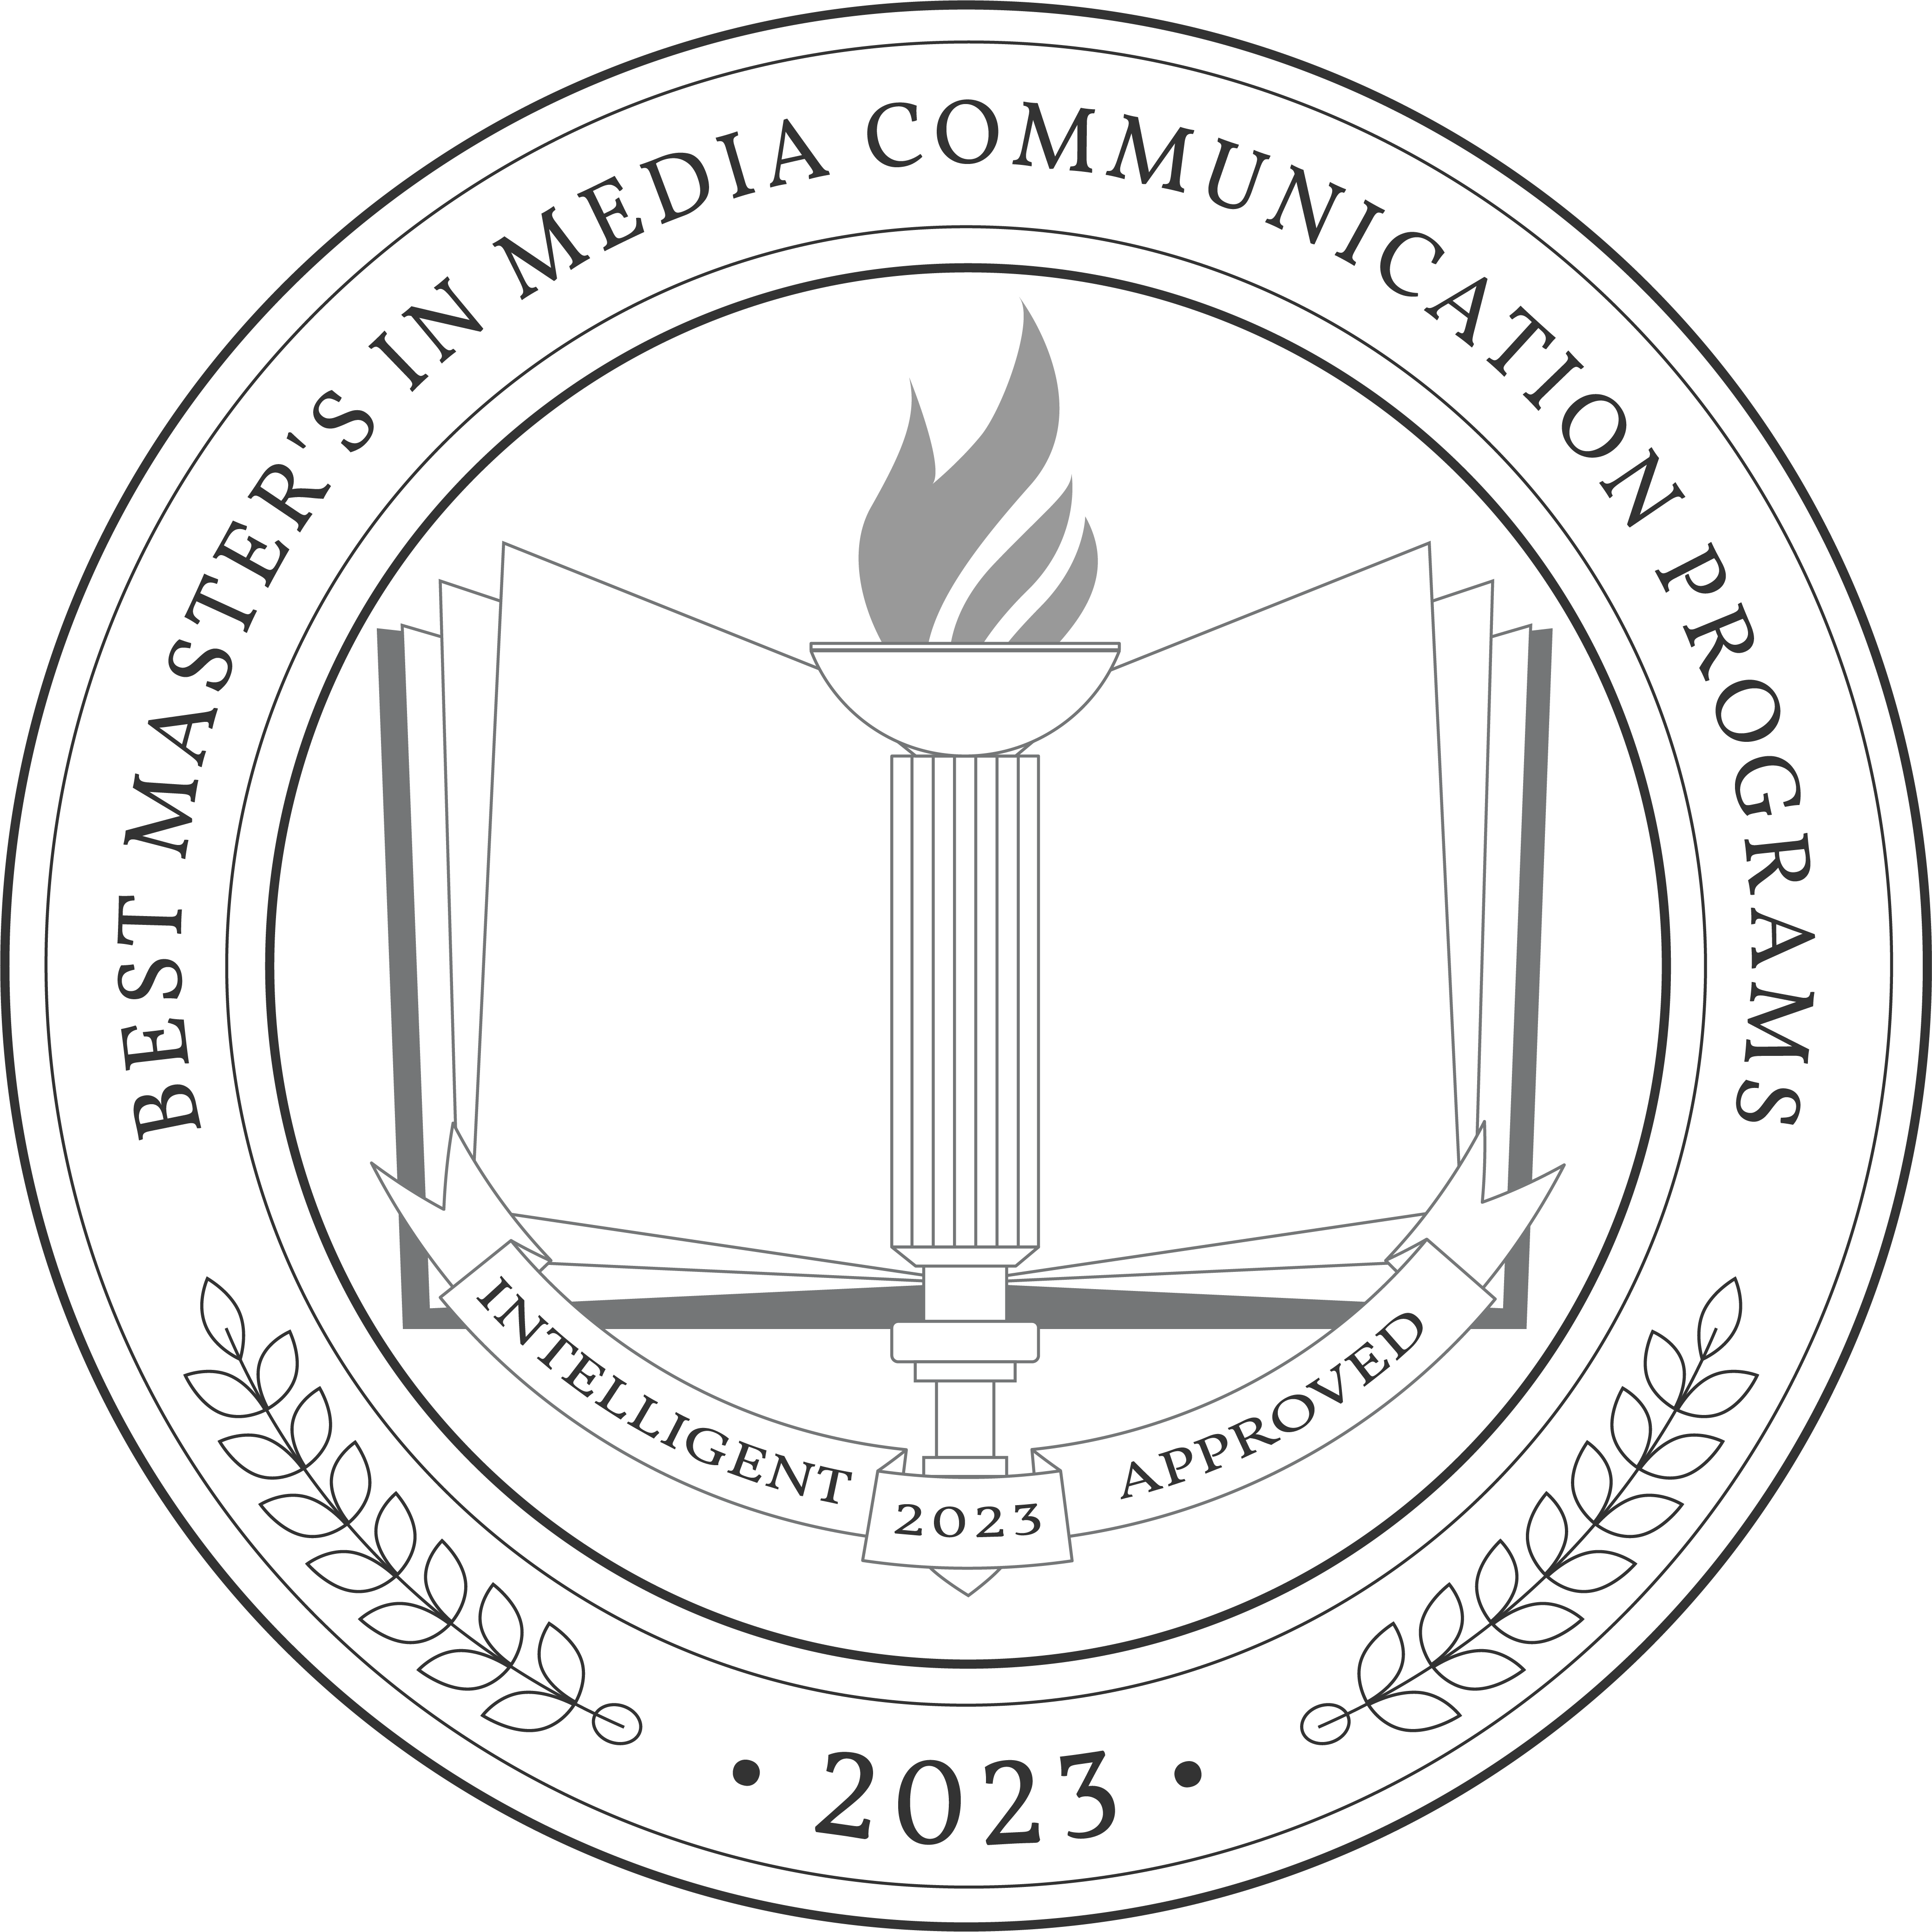 Best Master's in Media Communication Programs 2023